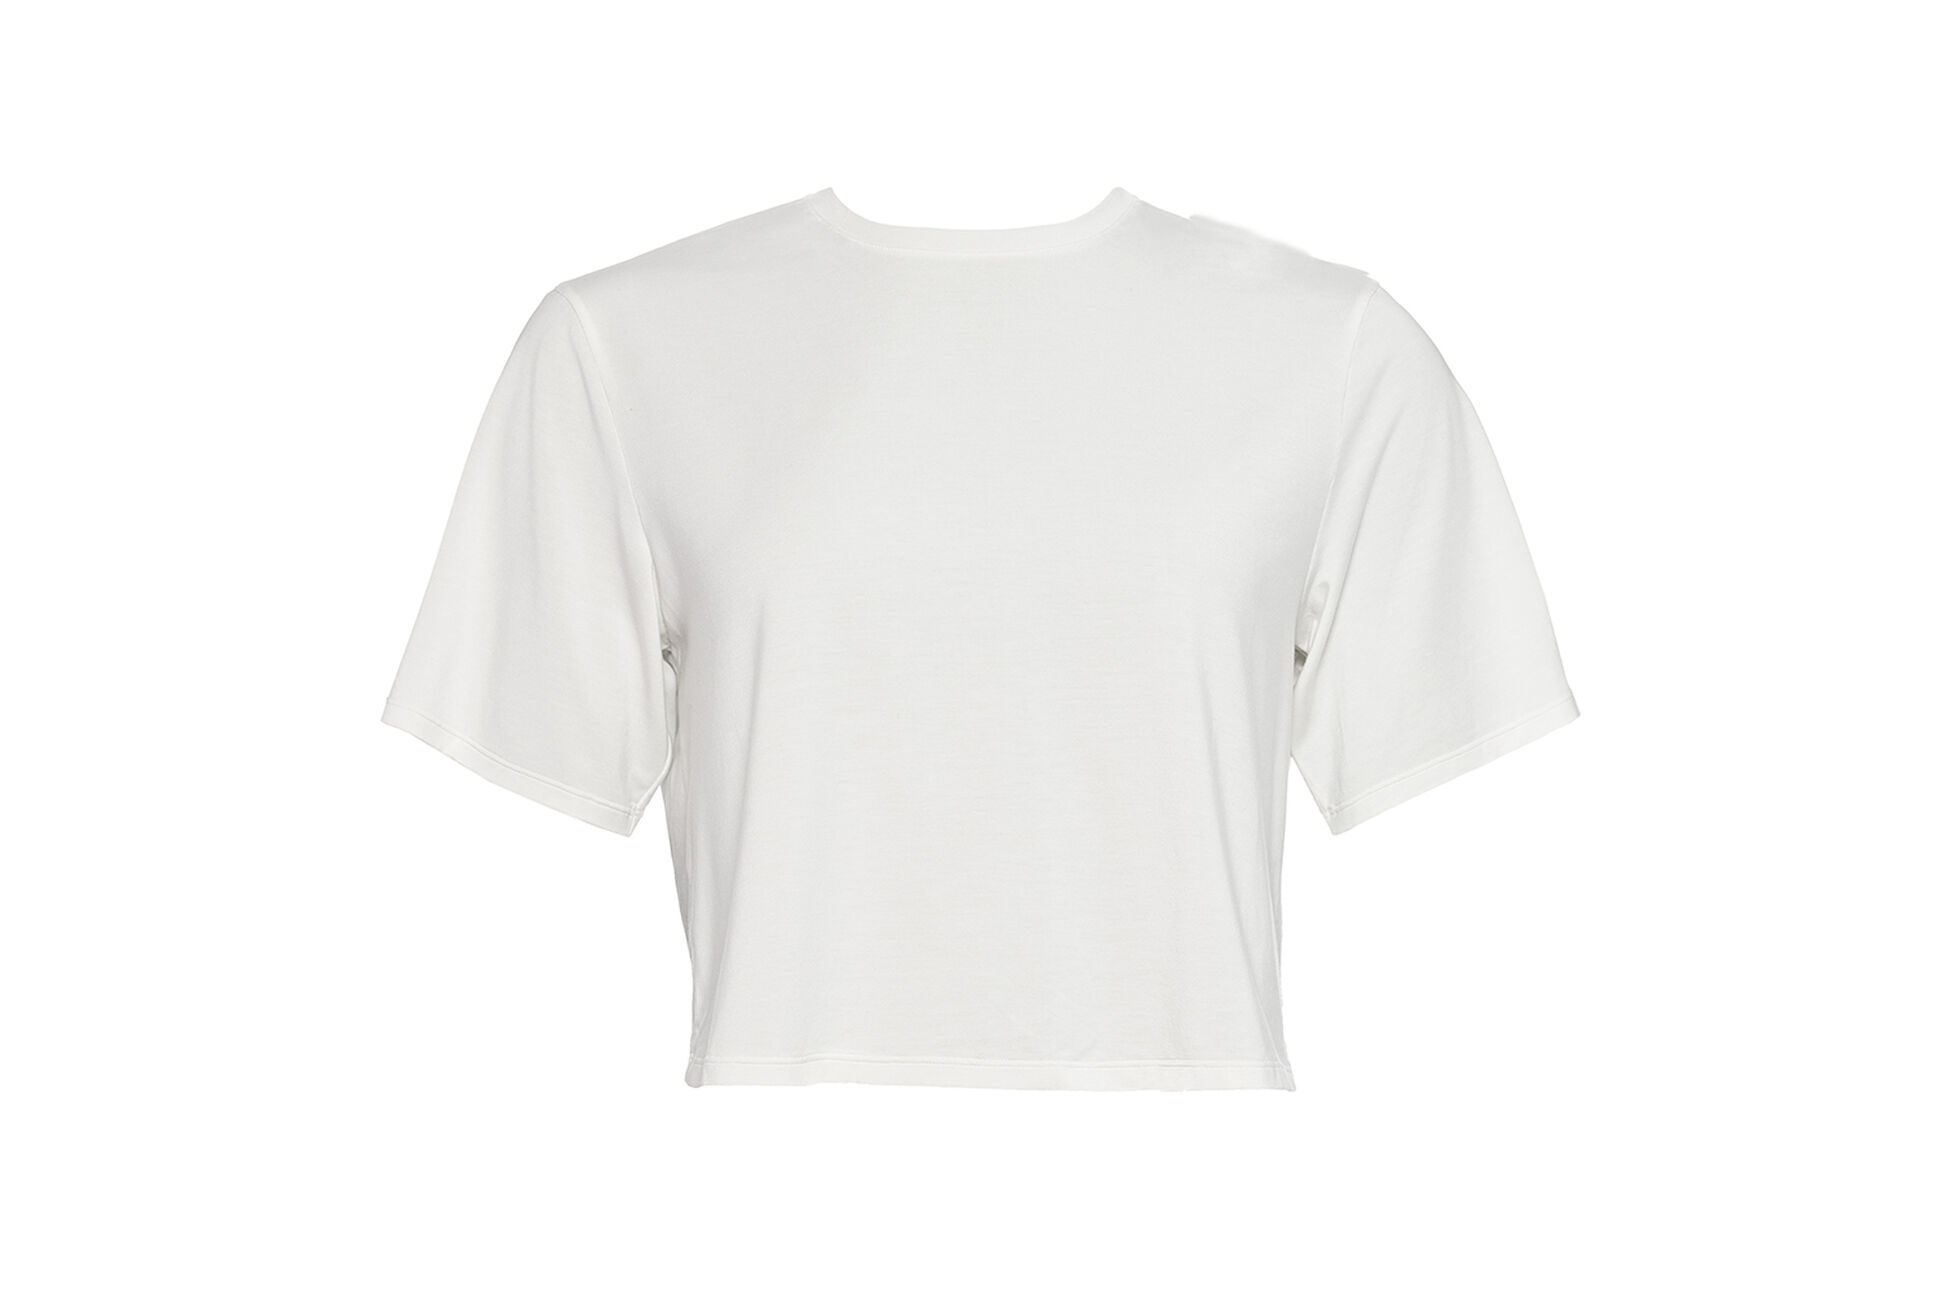 Félicia T-shirt vue standard NaN